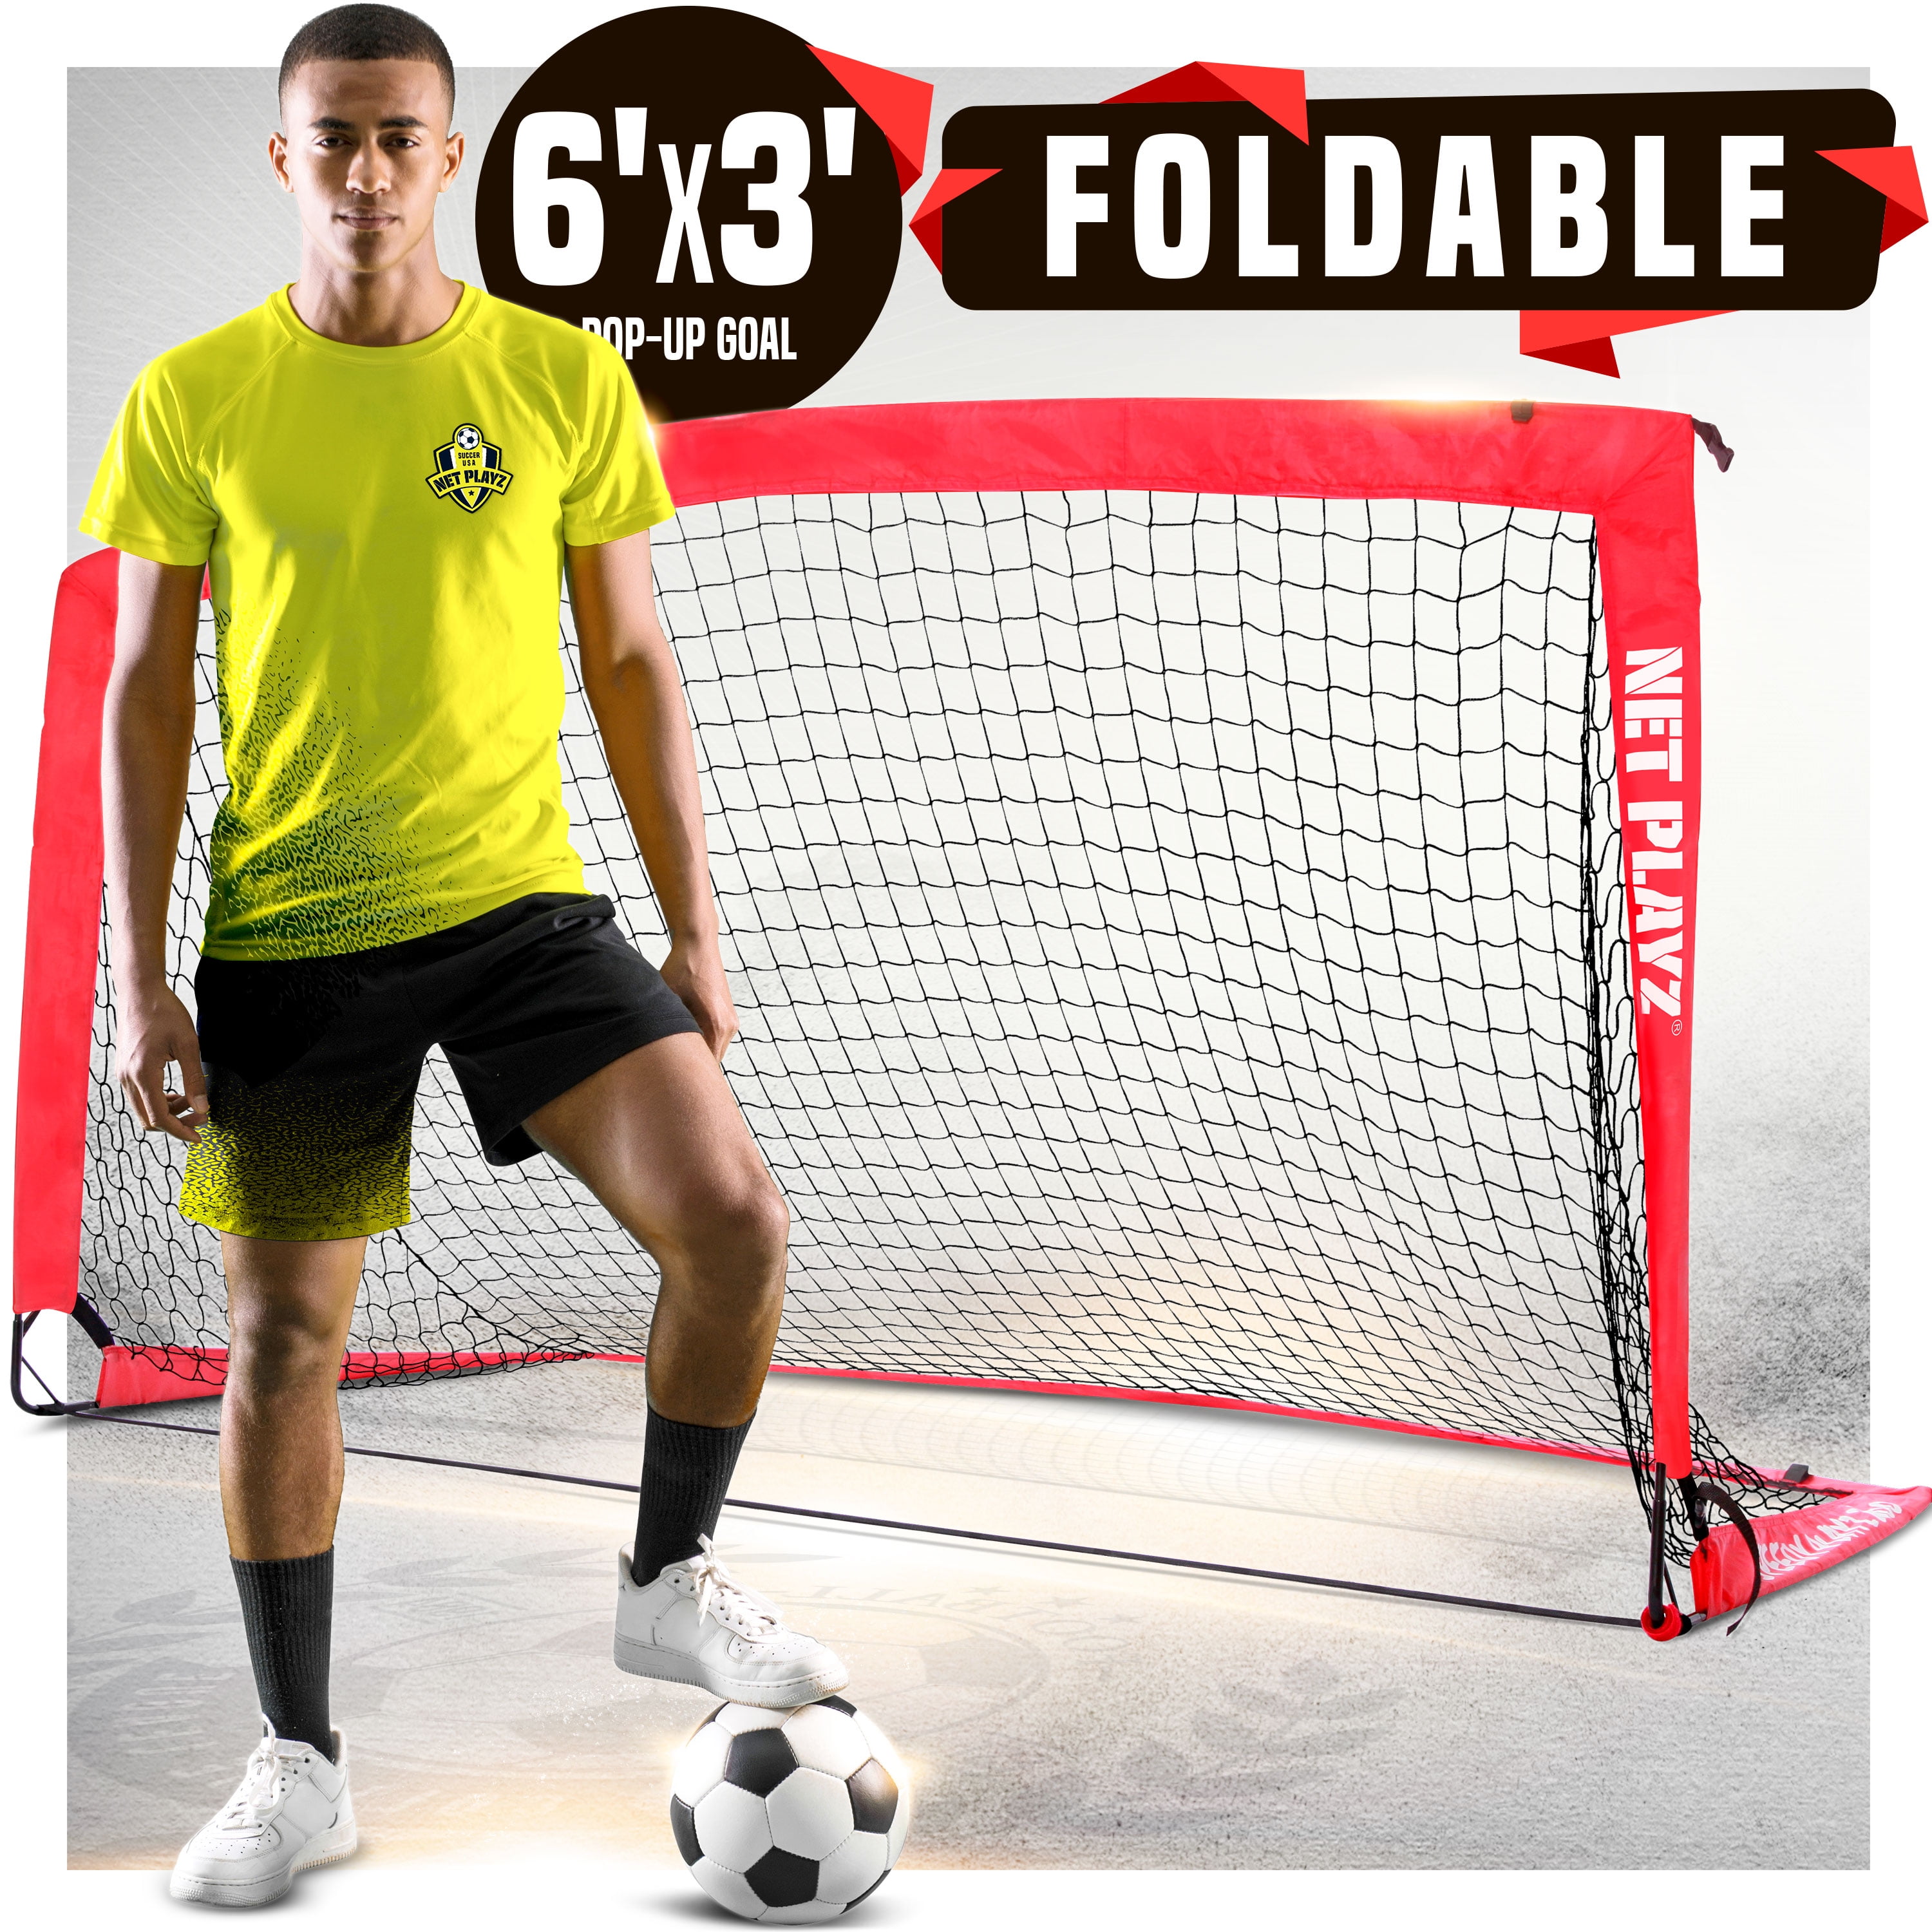 8ft x 4ft garden 5-a-side football match goal portable lightweight 